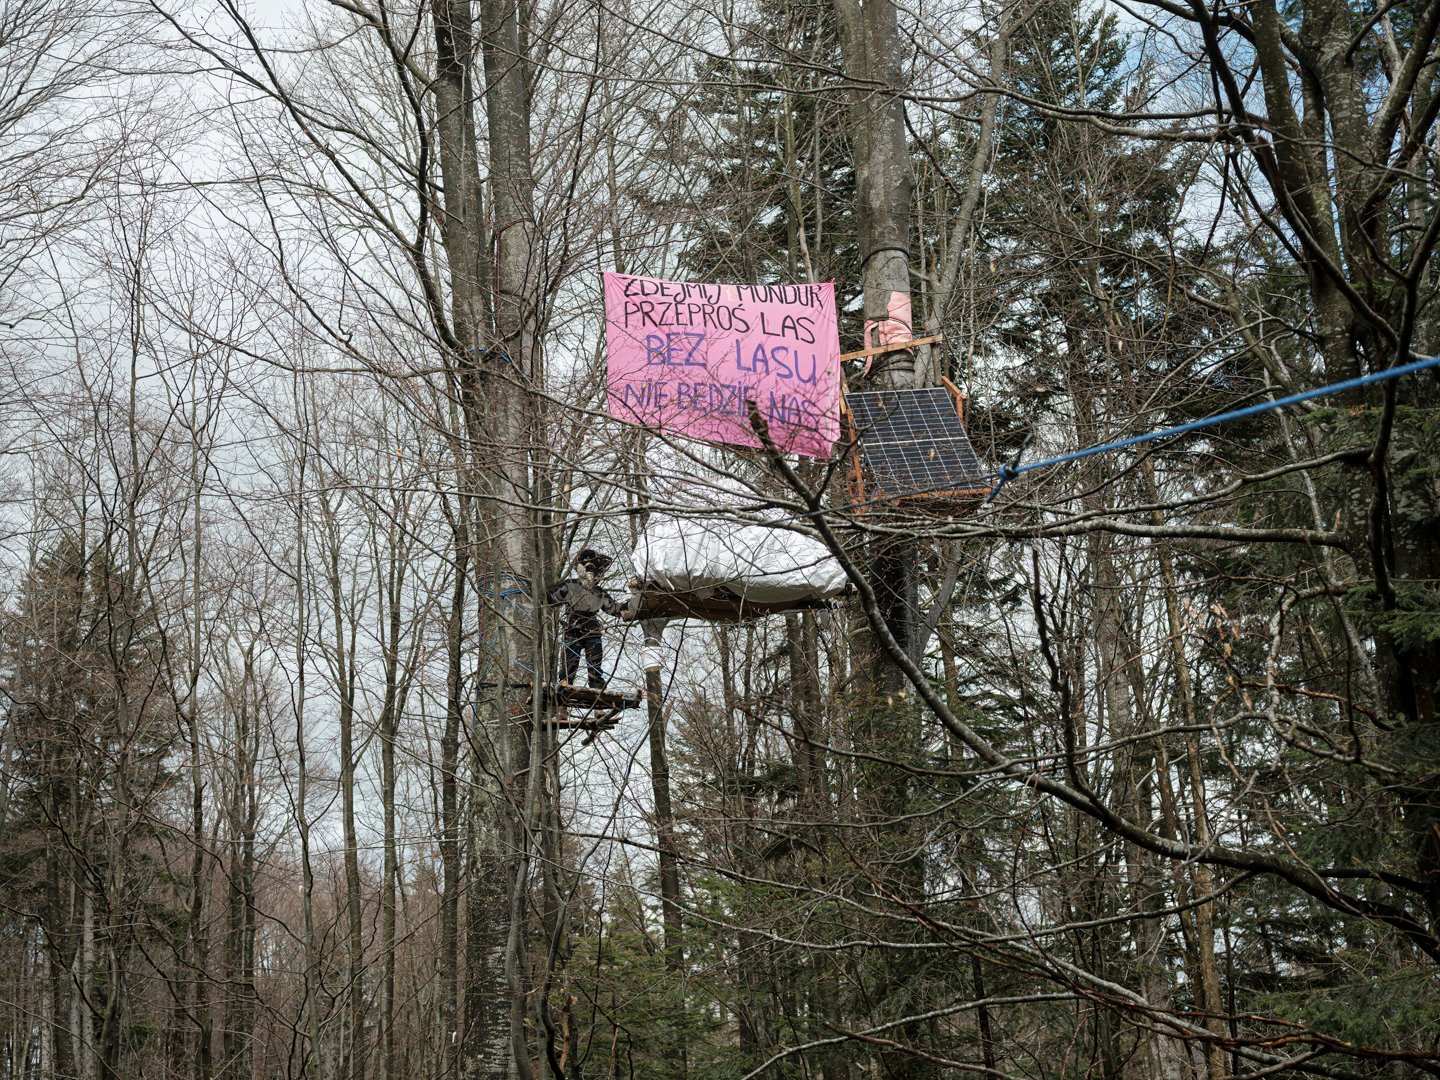 Wycinek okupacji Karpat, między dwoma drzewami rozciągnięty jest baner „Zdejmij mundur przeproś las, bez lasu nie będzie nas”, platforma i panel słoneczny.